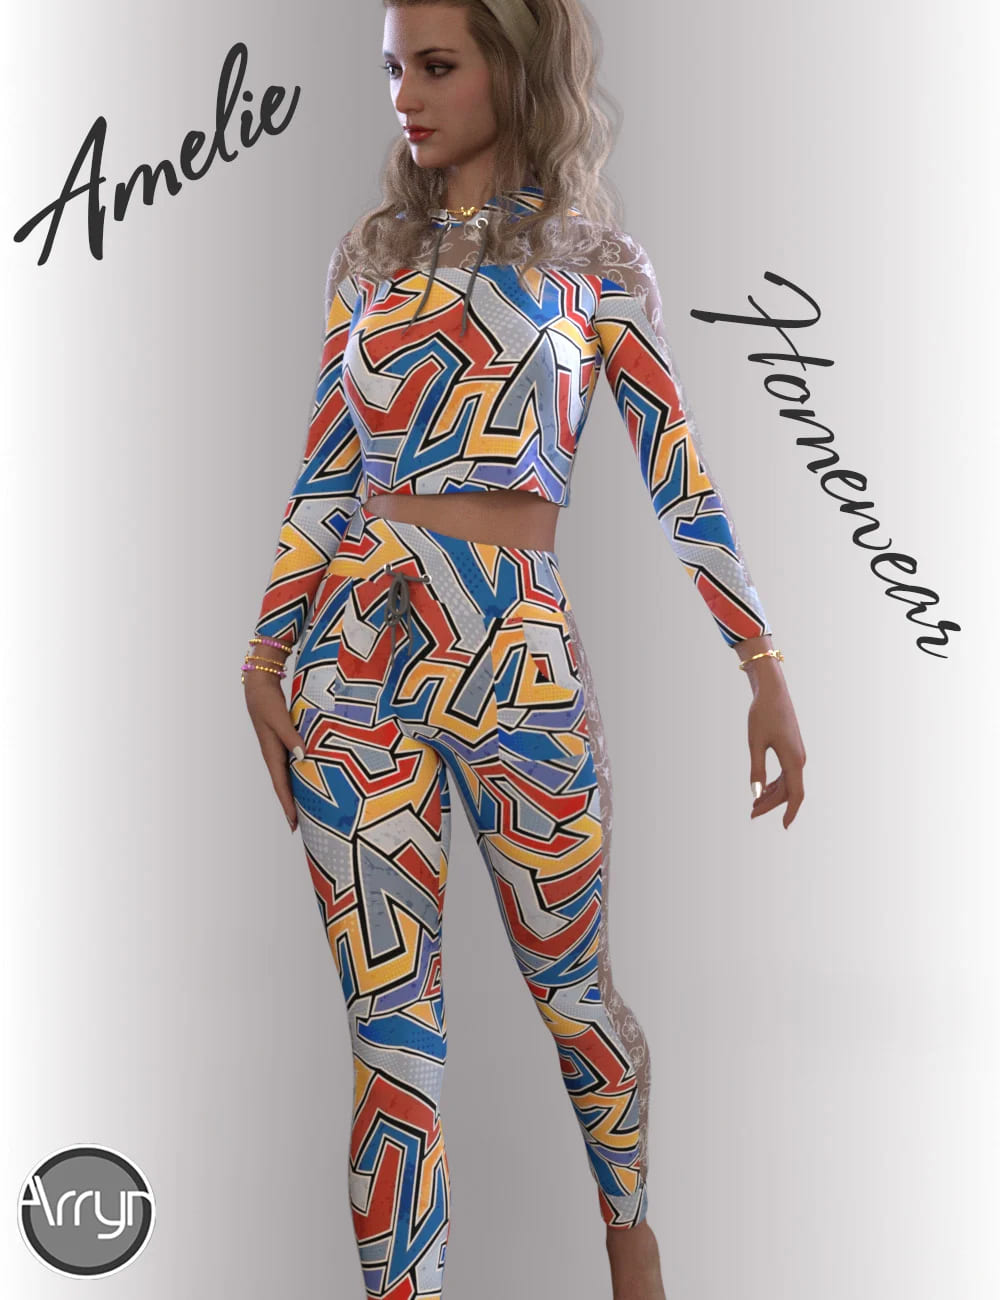 dForce Amelie Homewear for Genesis 8.1 Females_DAZ3DDL